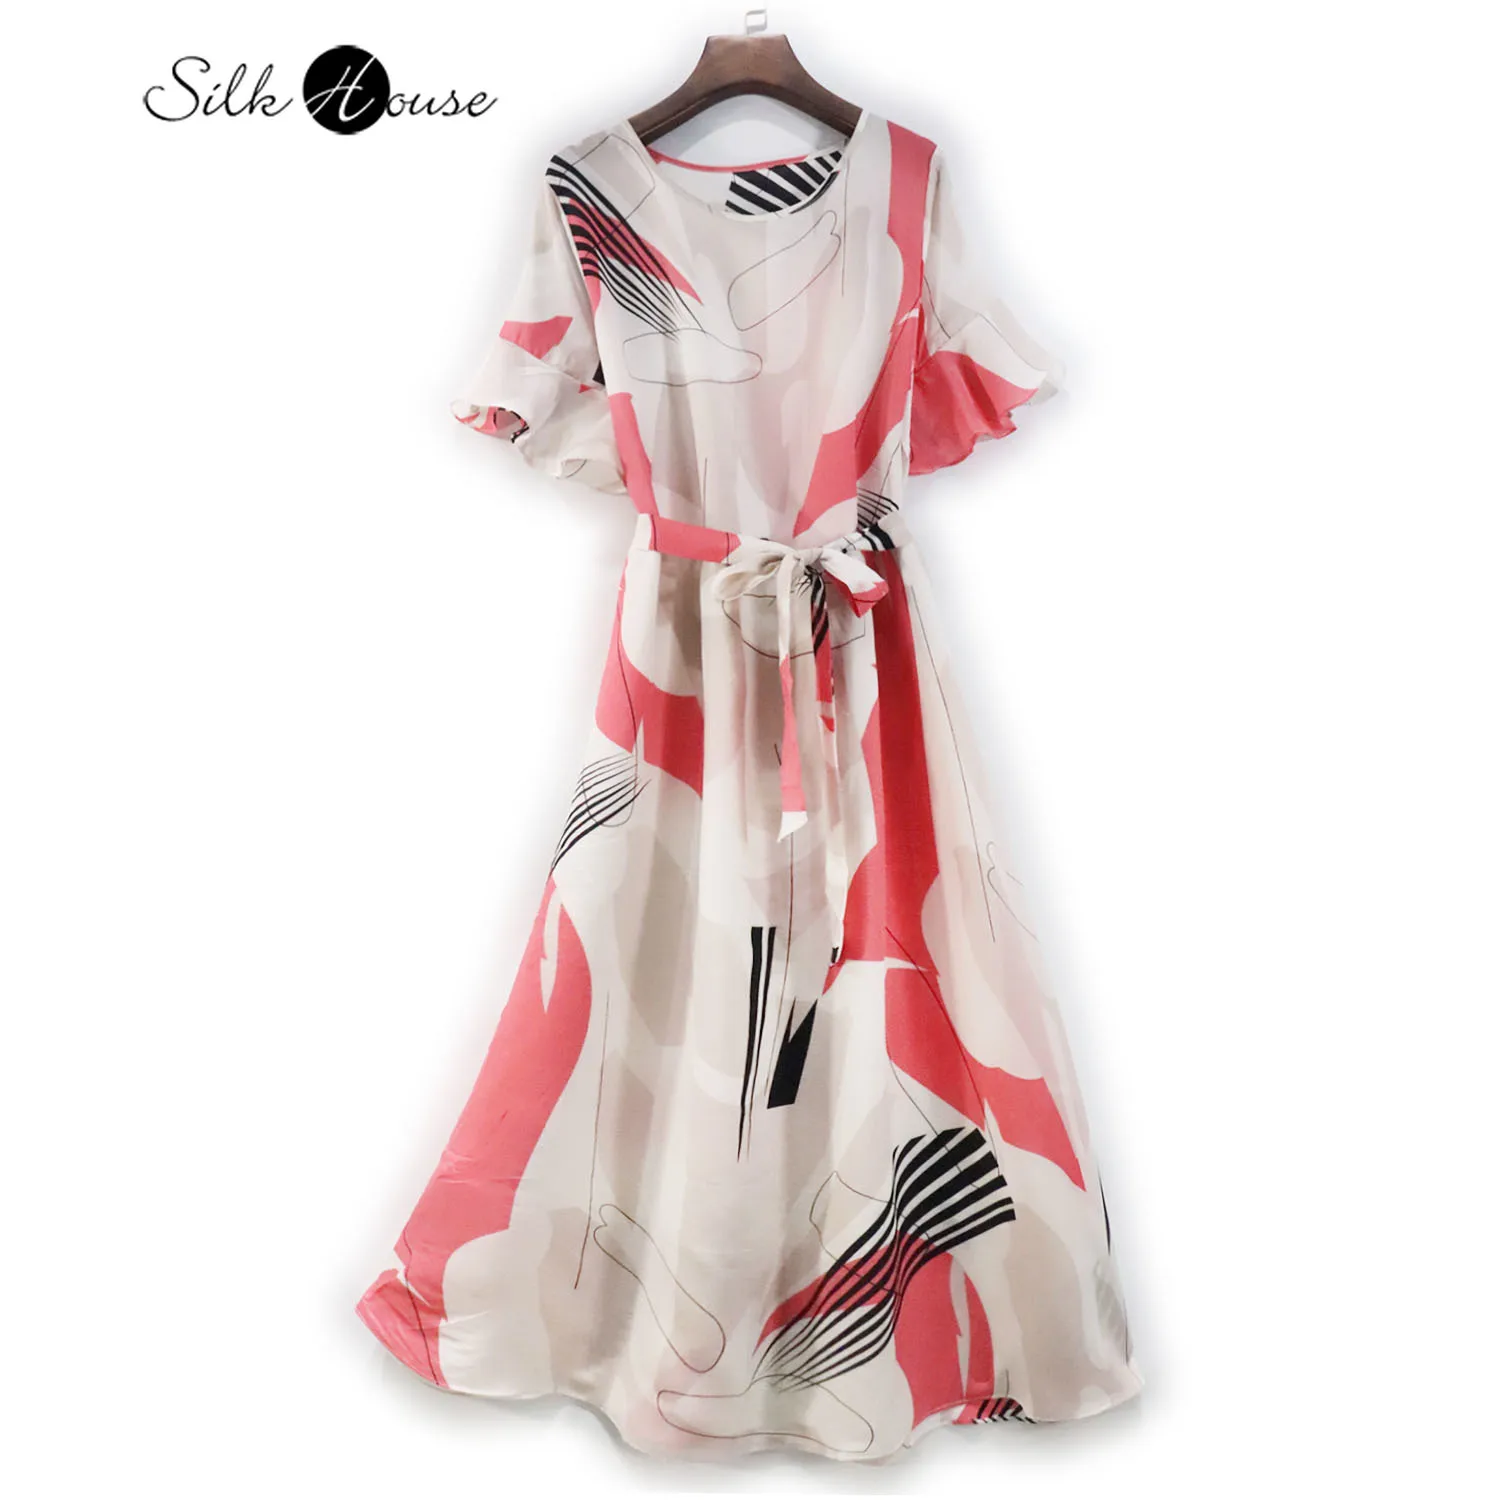 

Silk Dress Mulberry Silk Medium Length Skirt Pink Abstract Print Women's Dress Lace Up Waist Round Neck Crepe De Chine